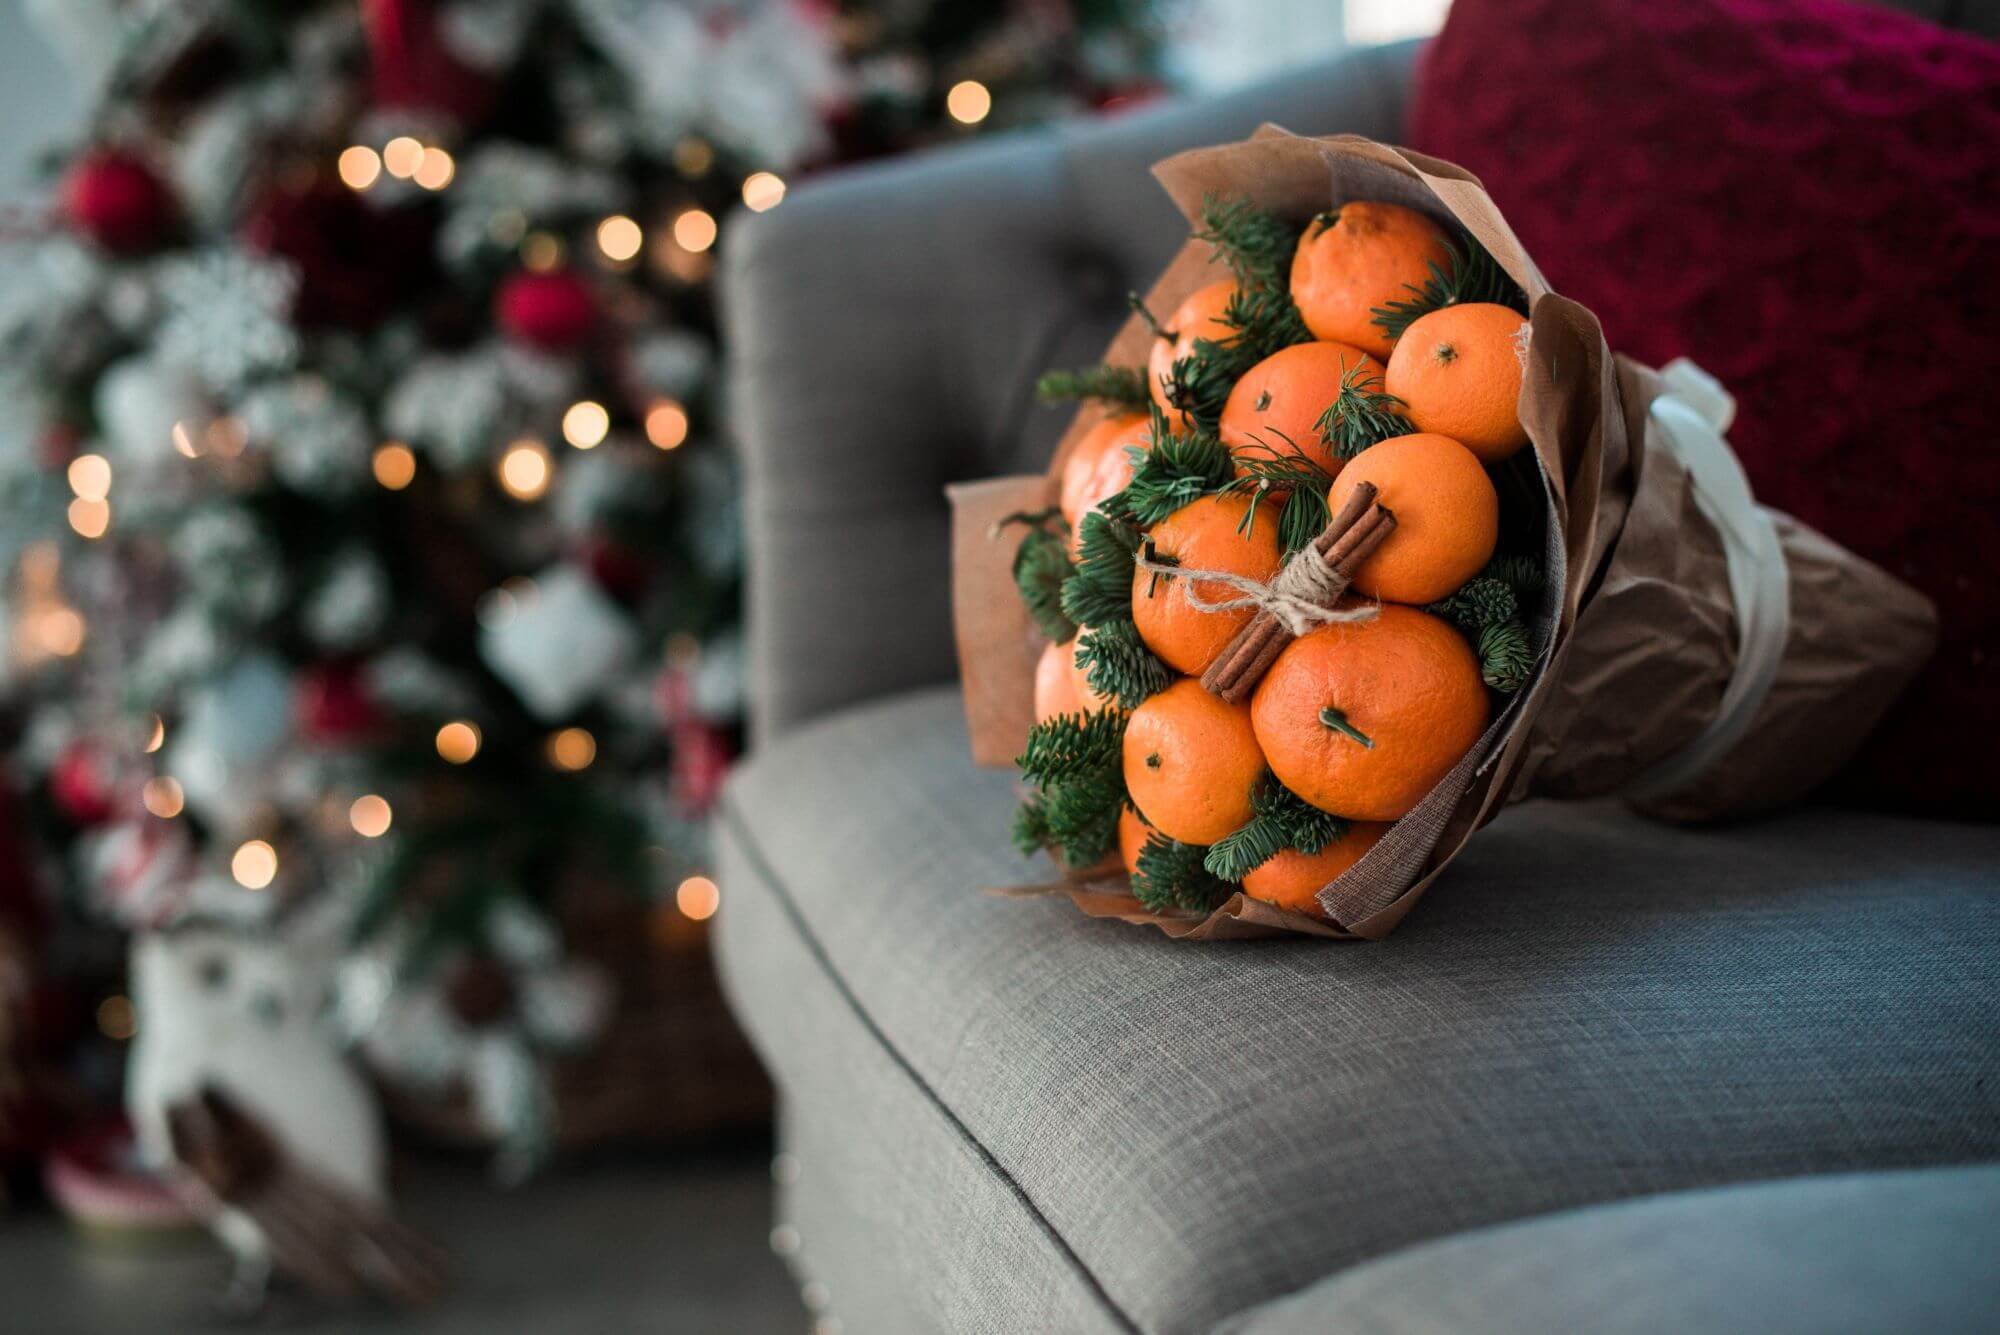 «Набор новогоднего настроения» – сколько придётся потратить на ёлку, гирлянды и икру?